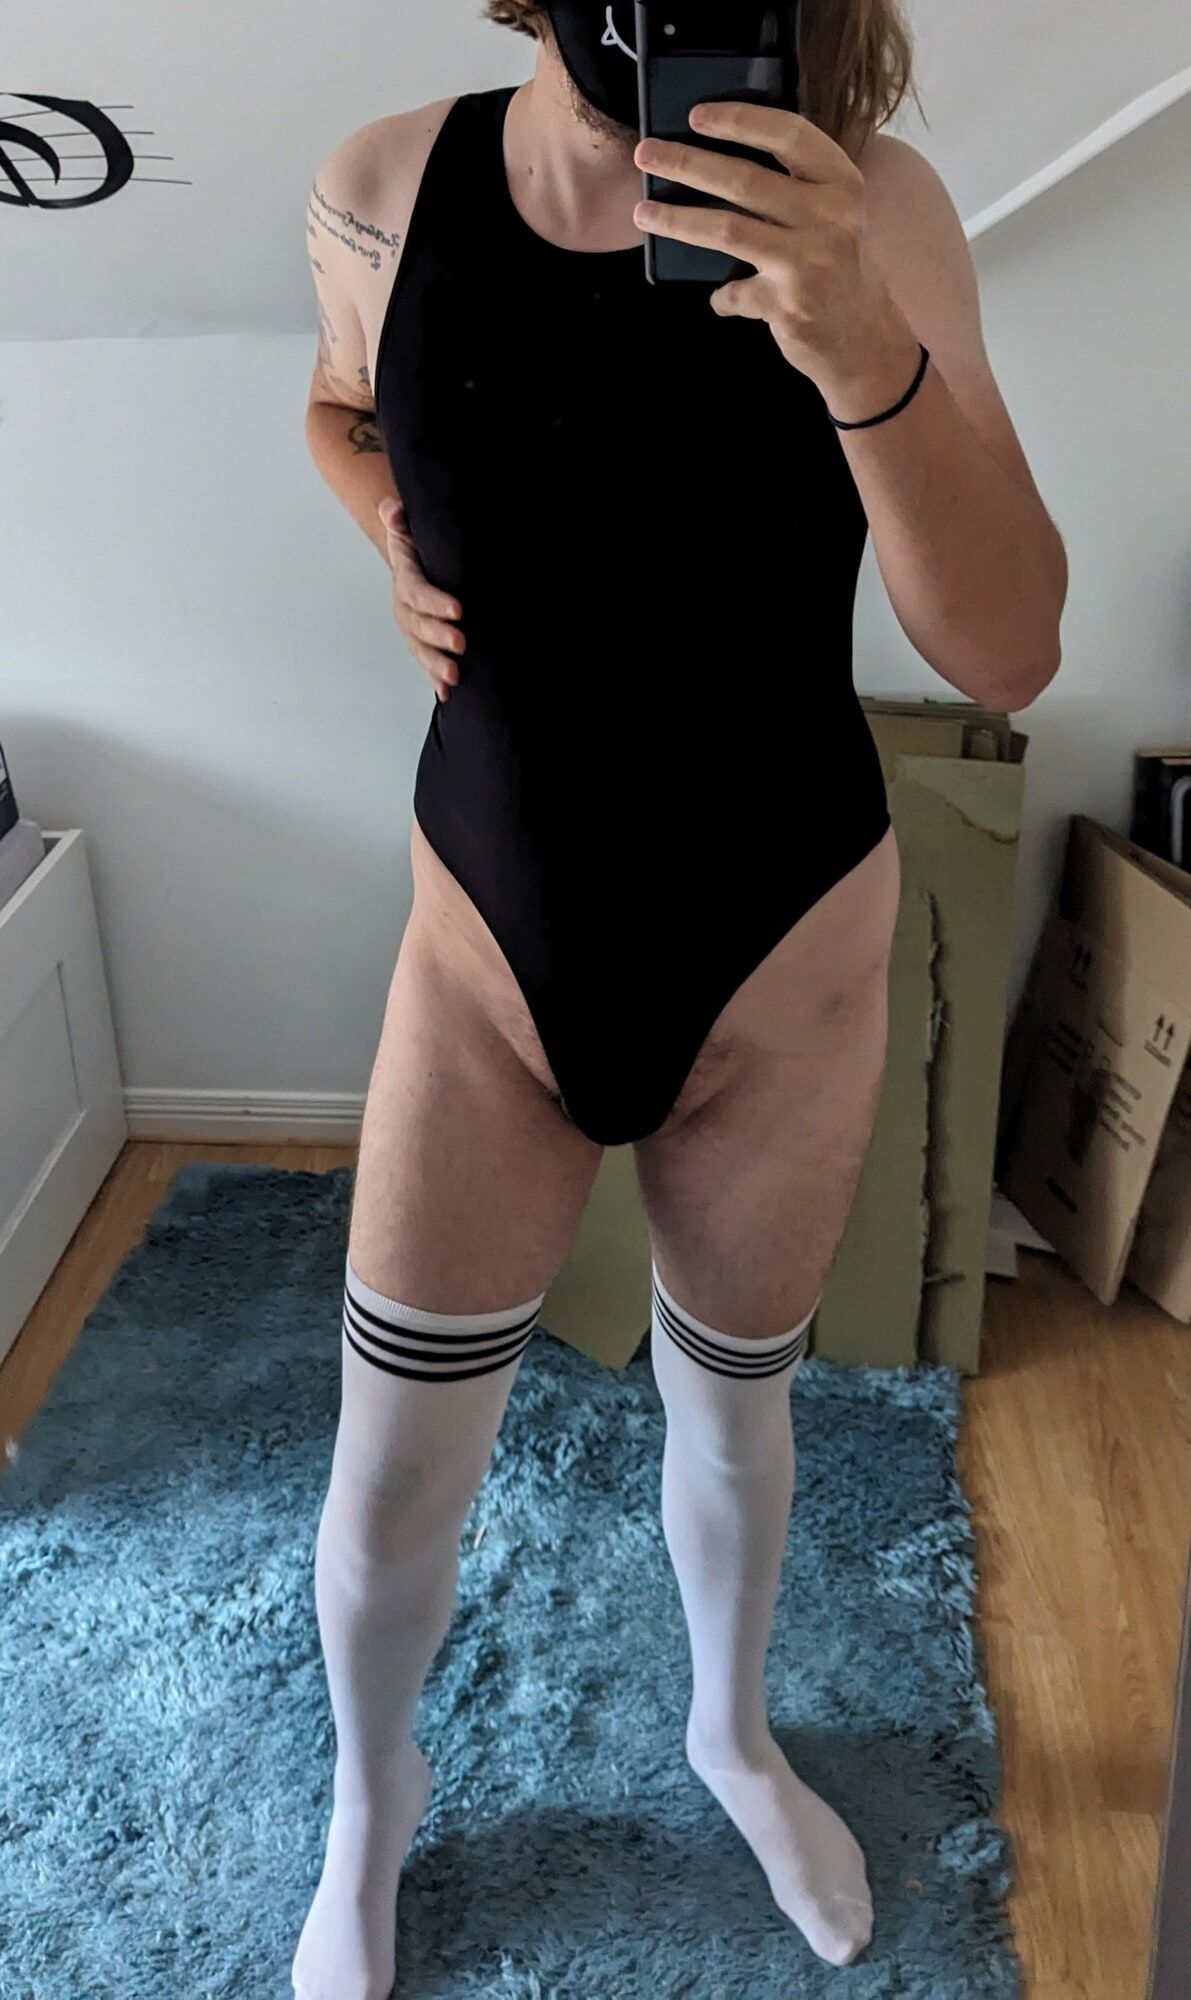 Sissy slut, solo bodysuit and thigh high socks fun #2